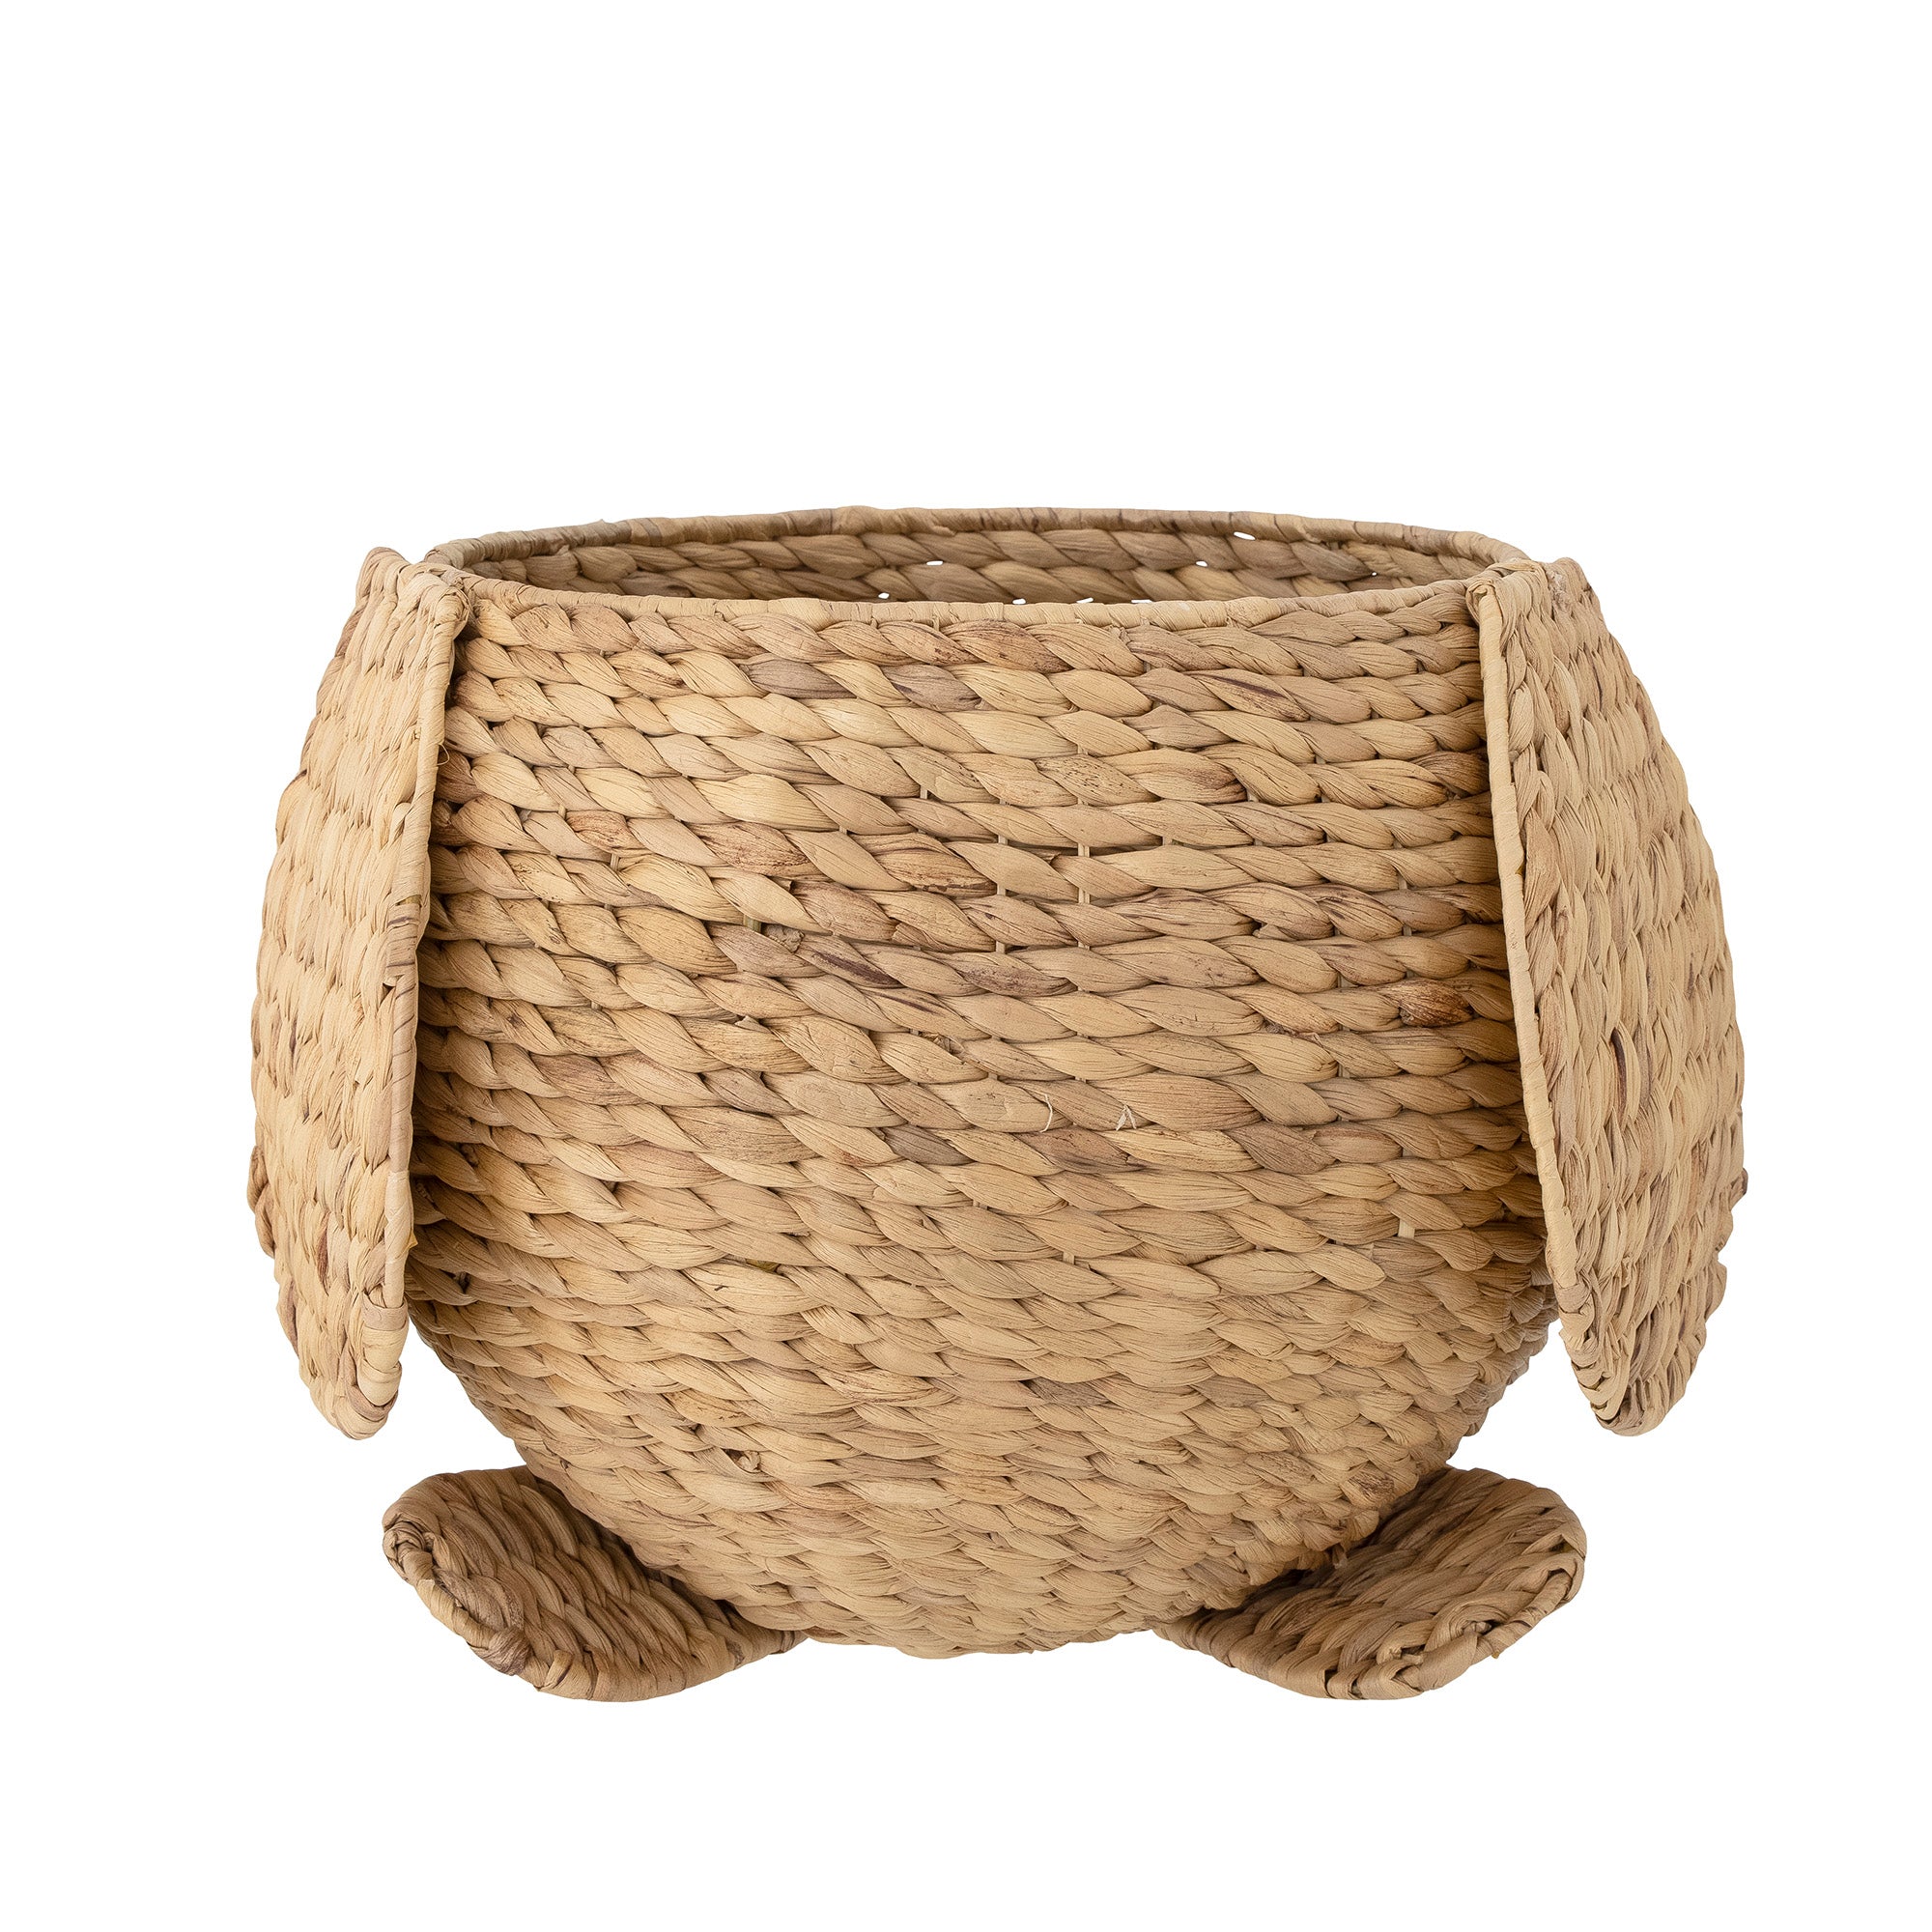 Pingo basket with lid 